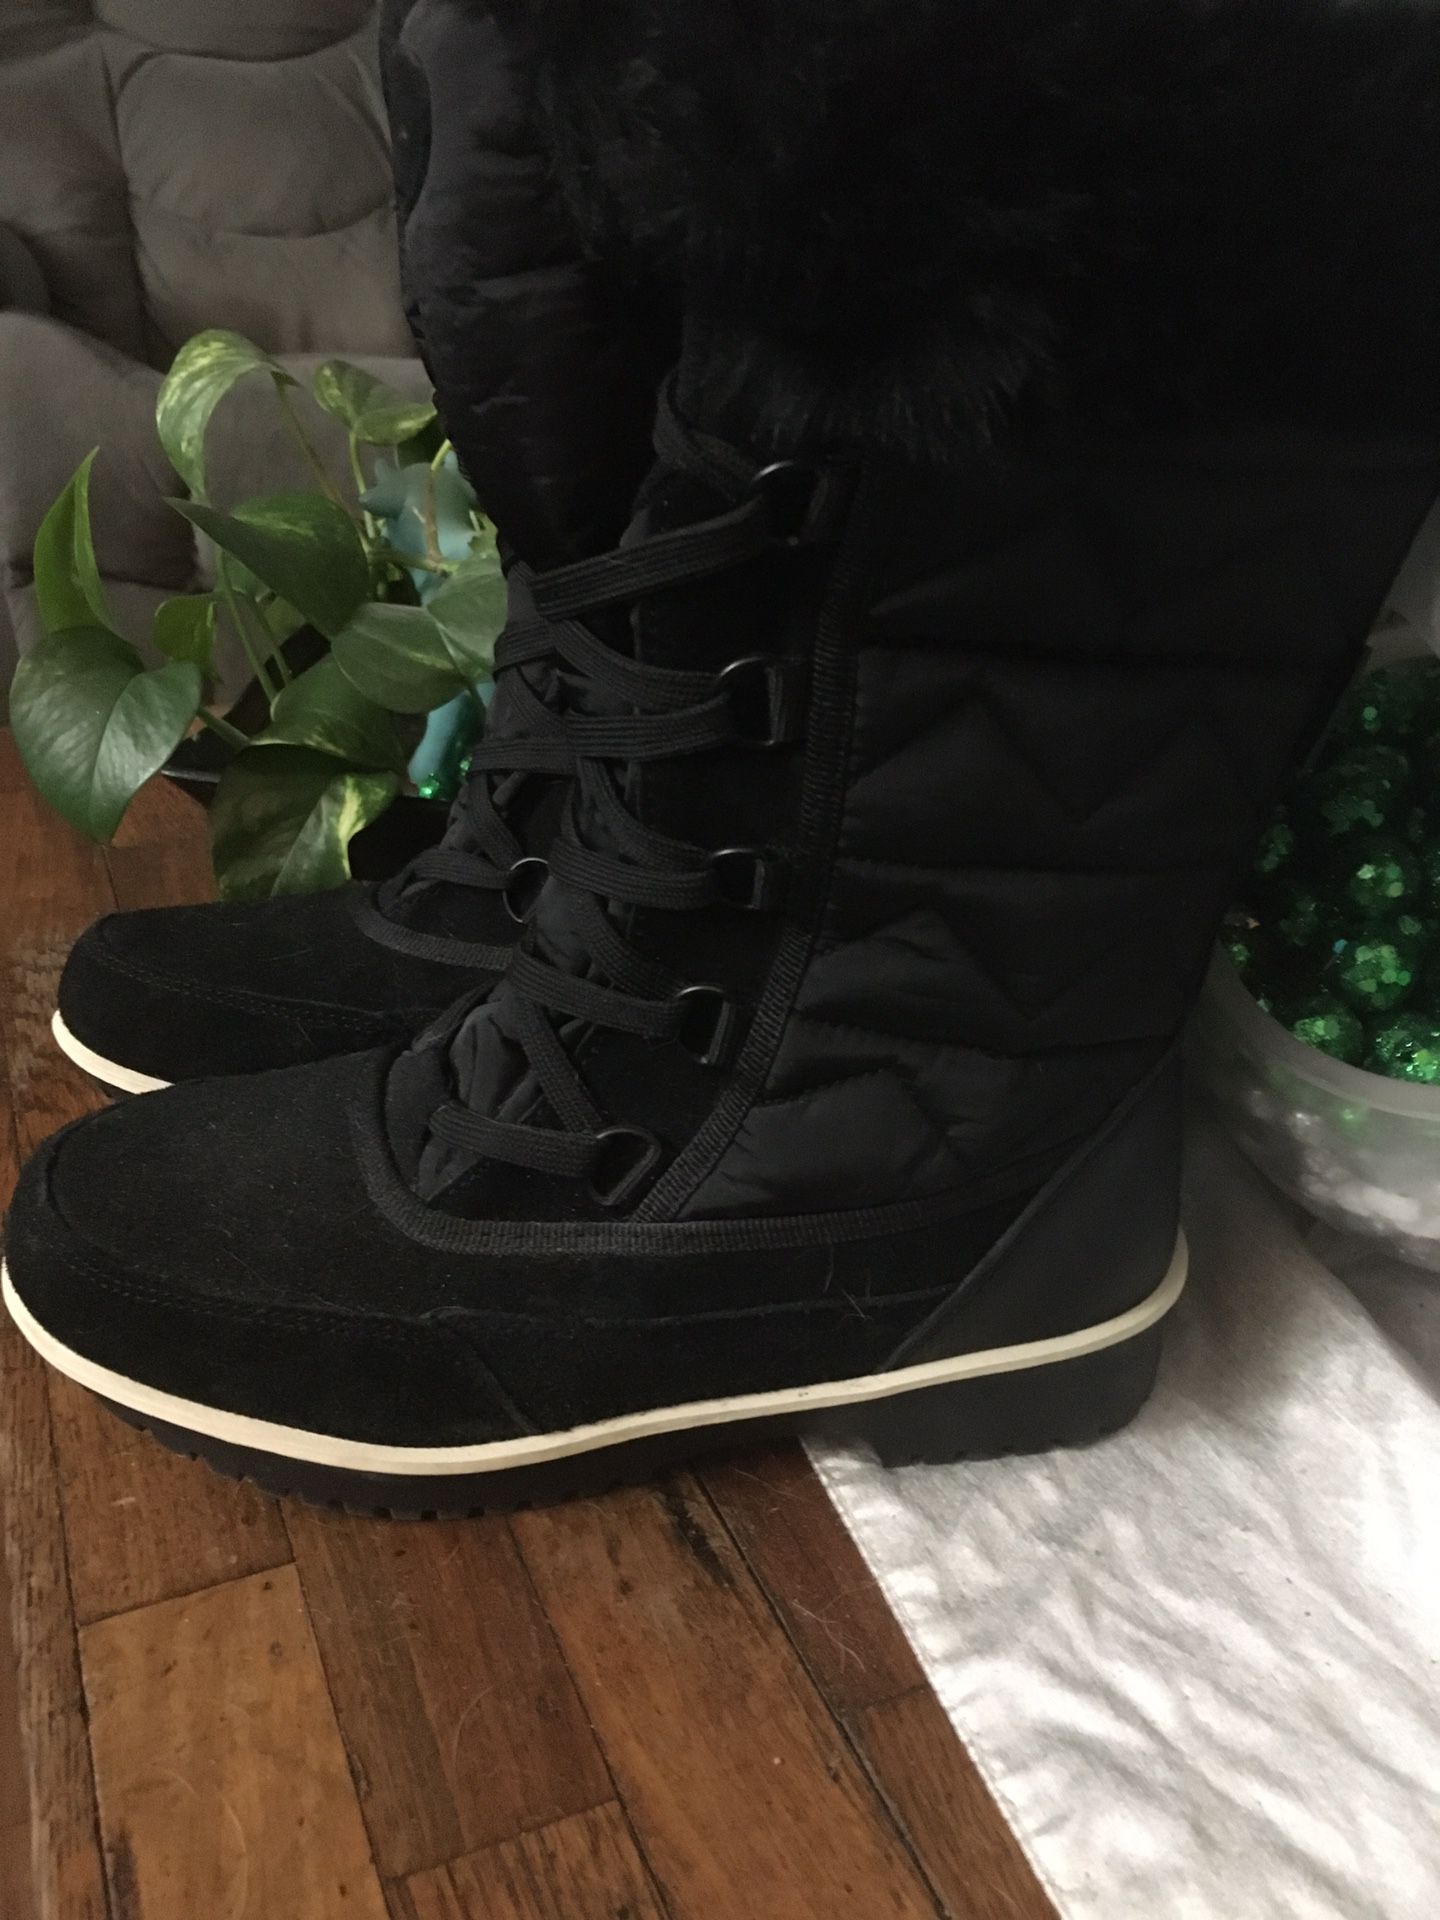 Women’s winter boots